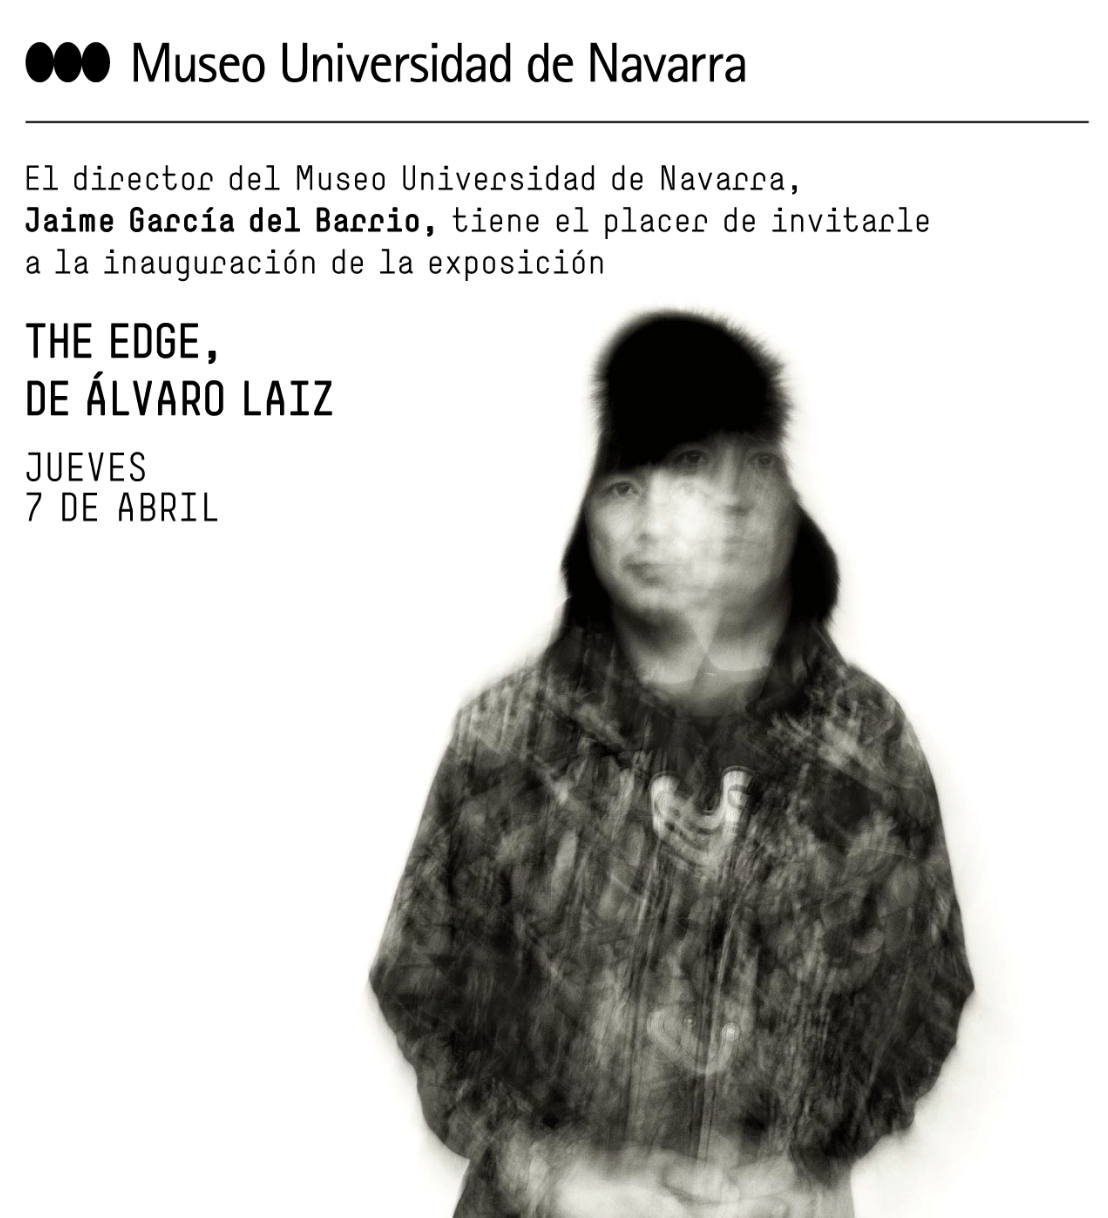 Exhibition: The Edge at Museo de Universidad de Navarra